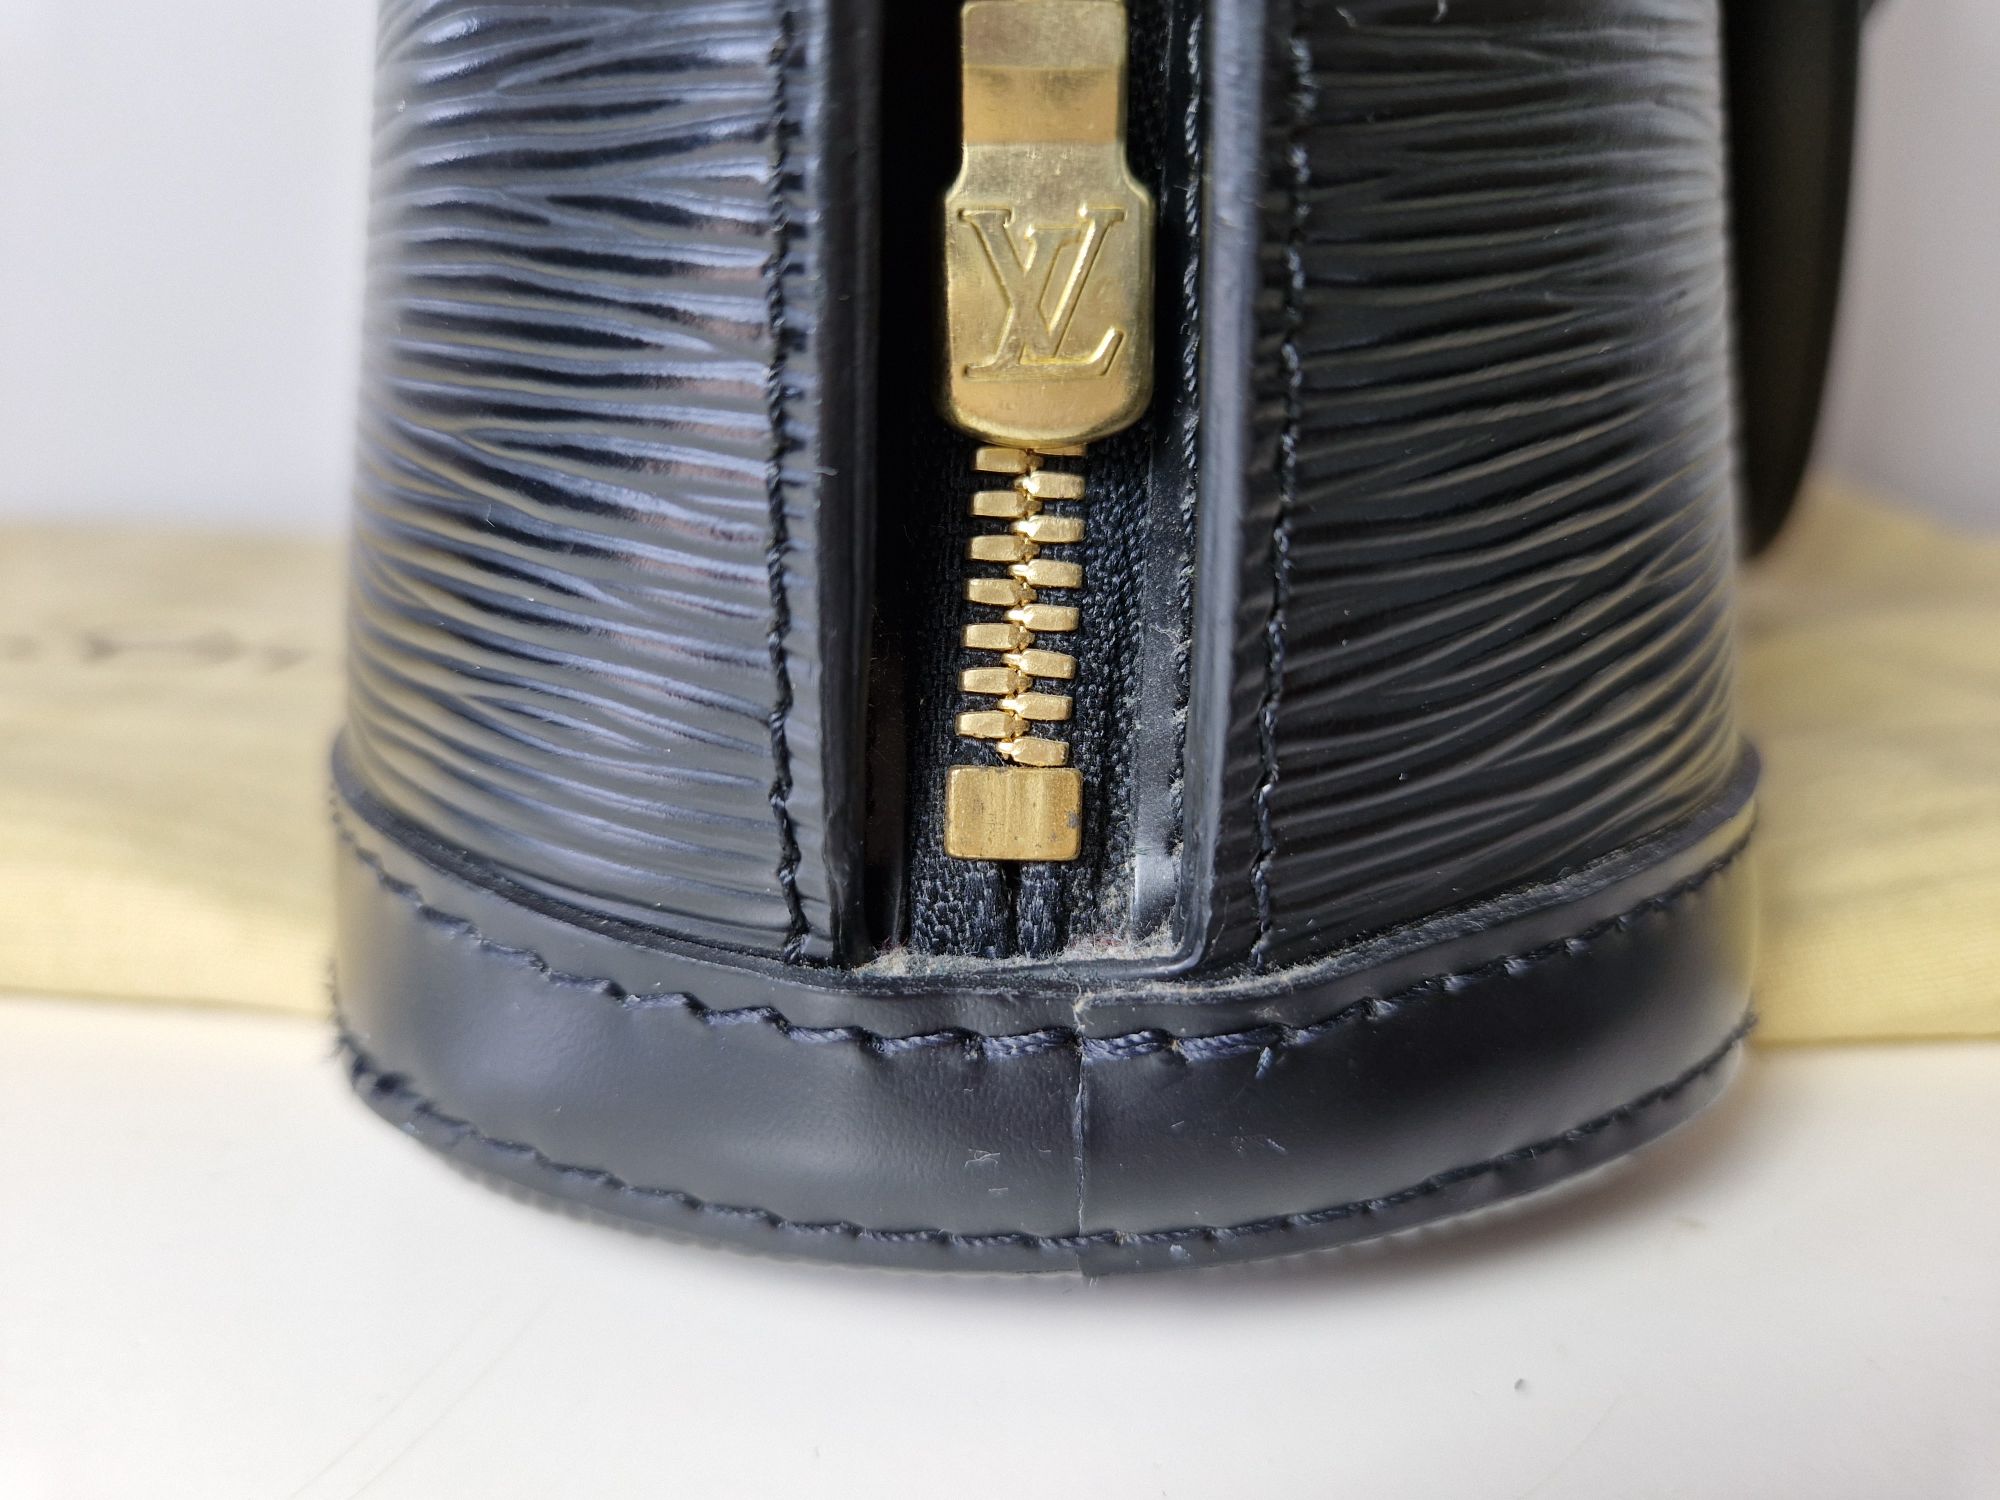 Black Louis Vuitton Epi Lussac Shoulder Bag, Sac à main Louis Vuitton Nano  Speedy en toile monogram marron et cuir naturel